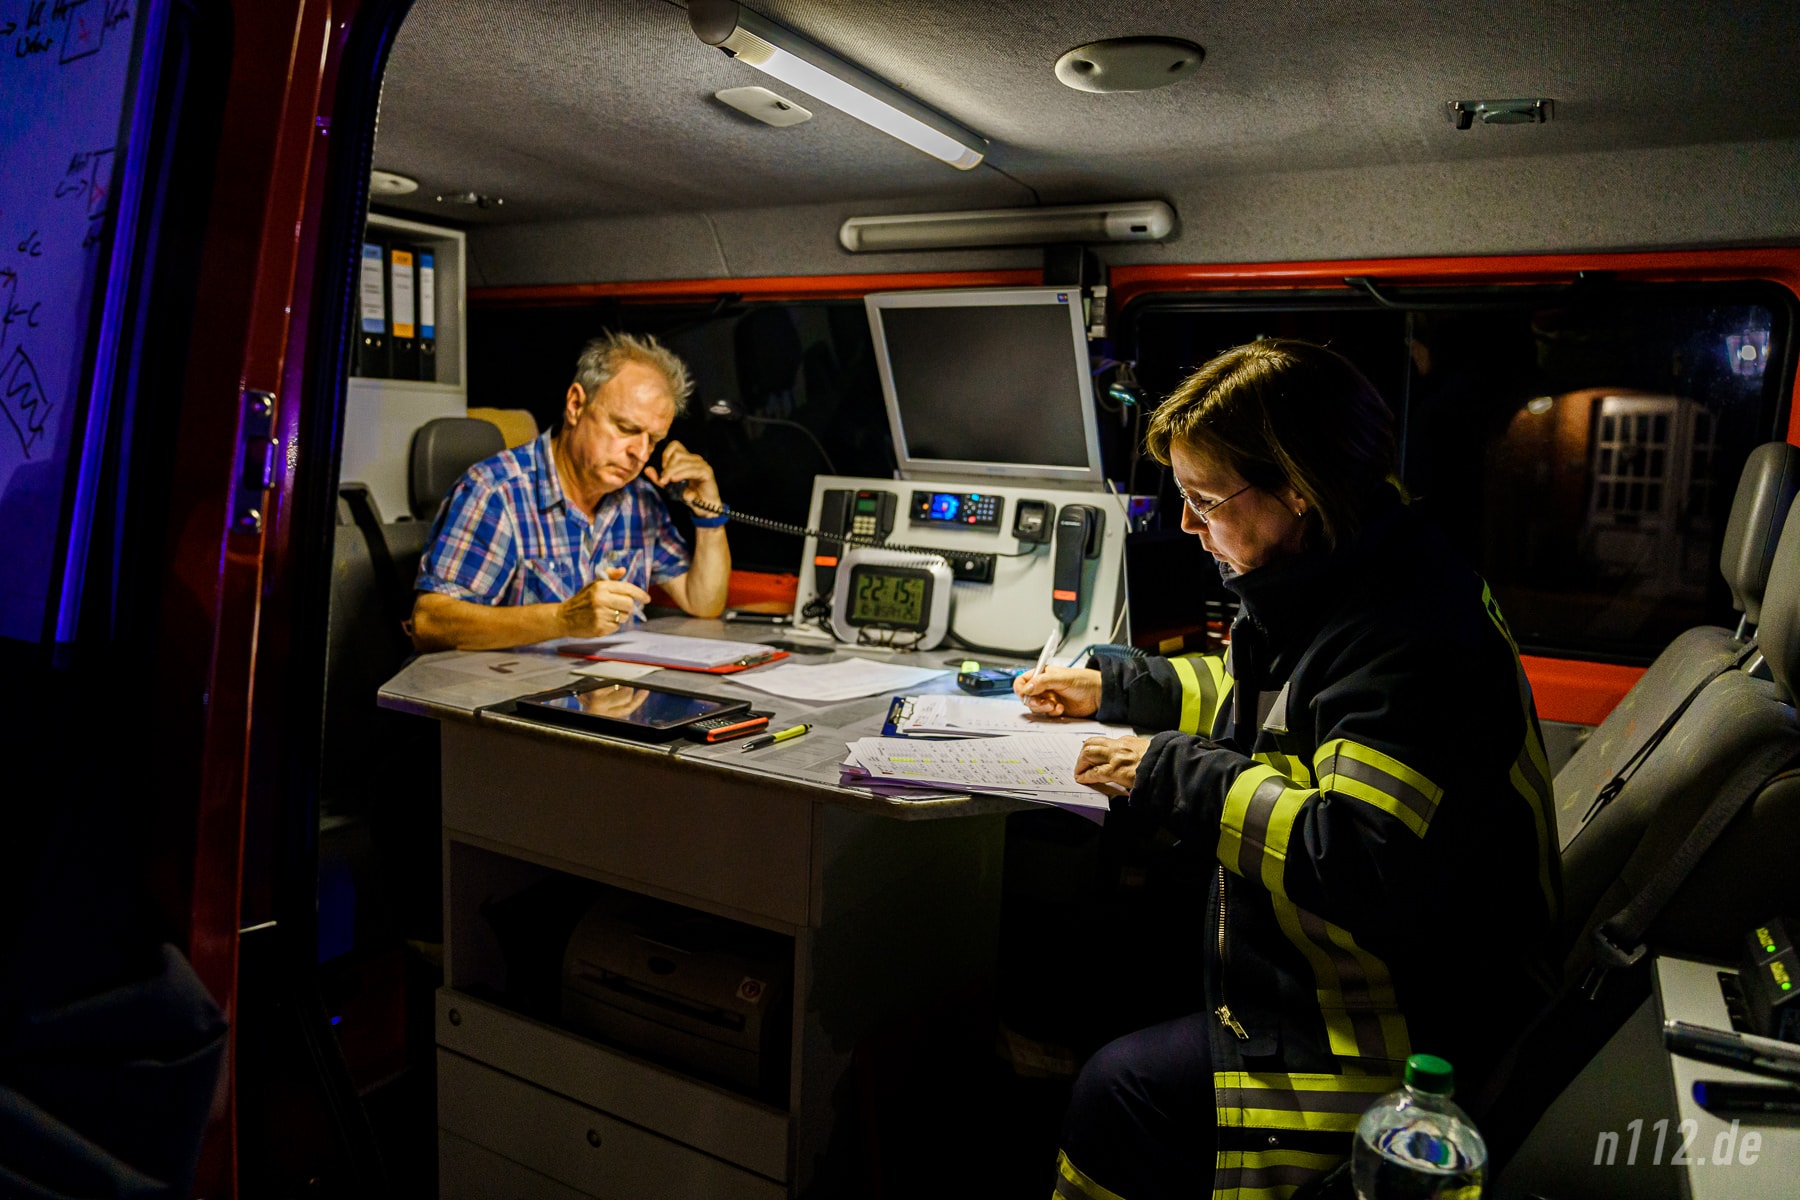 Bis spät in die Nacht dokumentierte das ehrenamtliche Team des Einsatzleitwagens (ELW) die Arbeit der über 170 Feuerwehrleute und stellte die Kommunikation zwischen Leitstelle und der Einsatzstelle sicher (Foto: n112.de/Stefan Hillen)